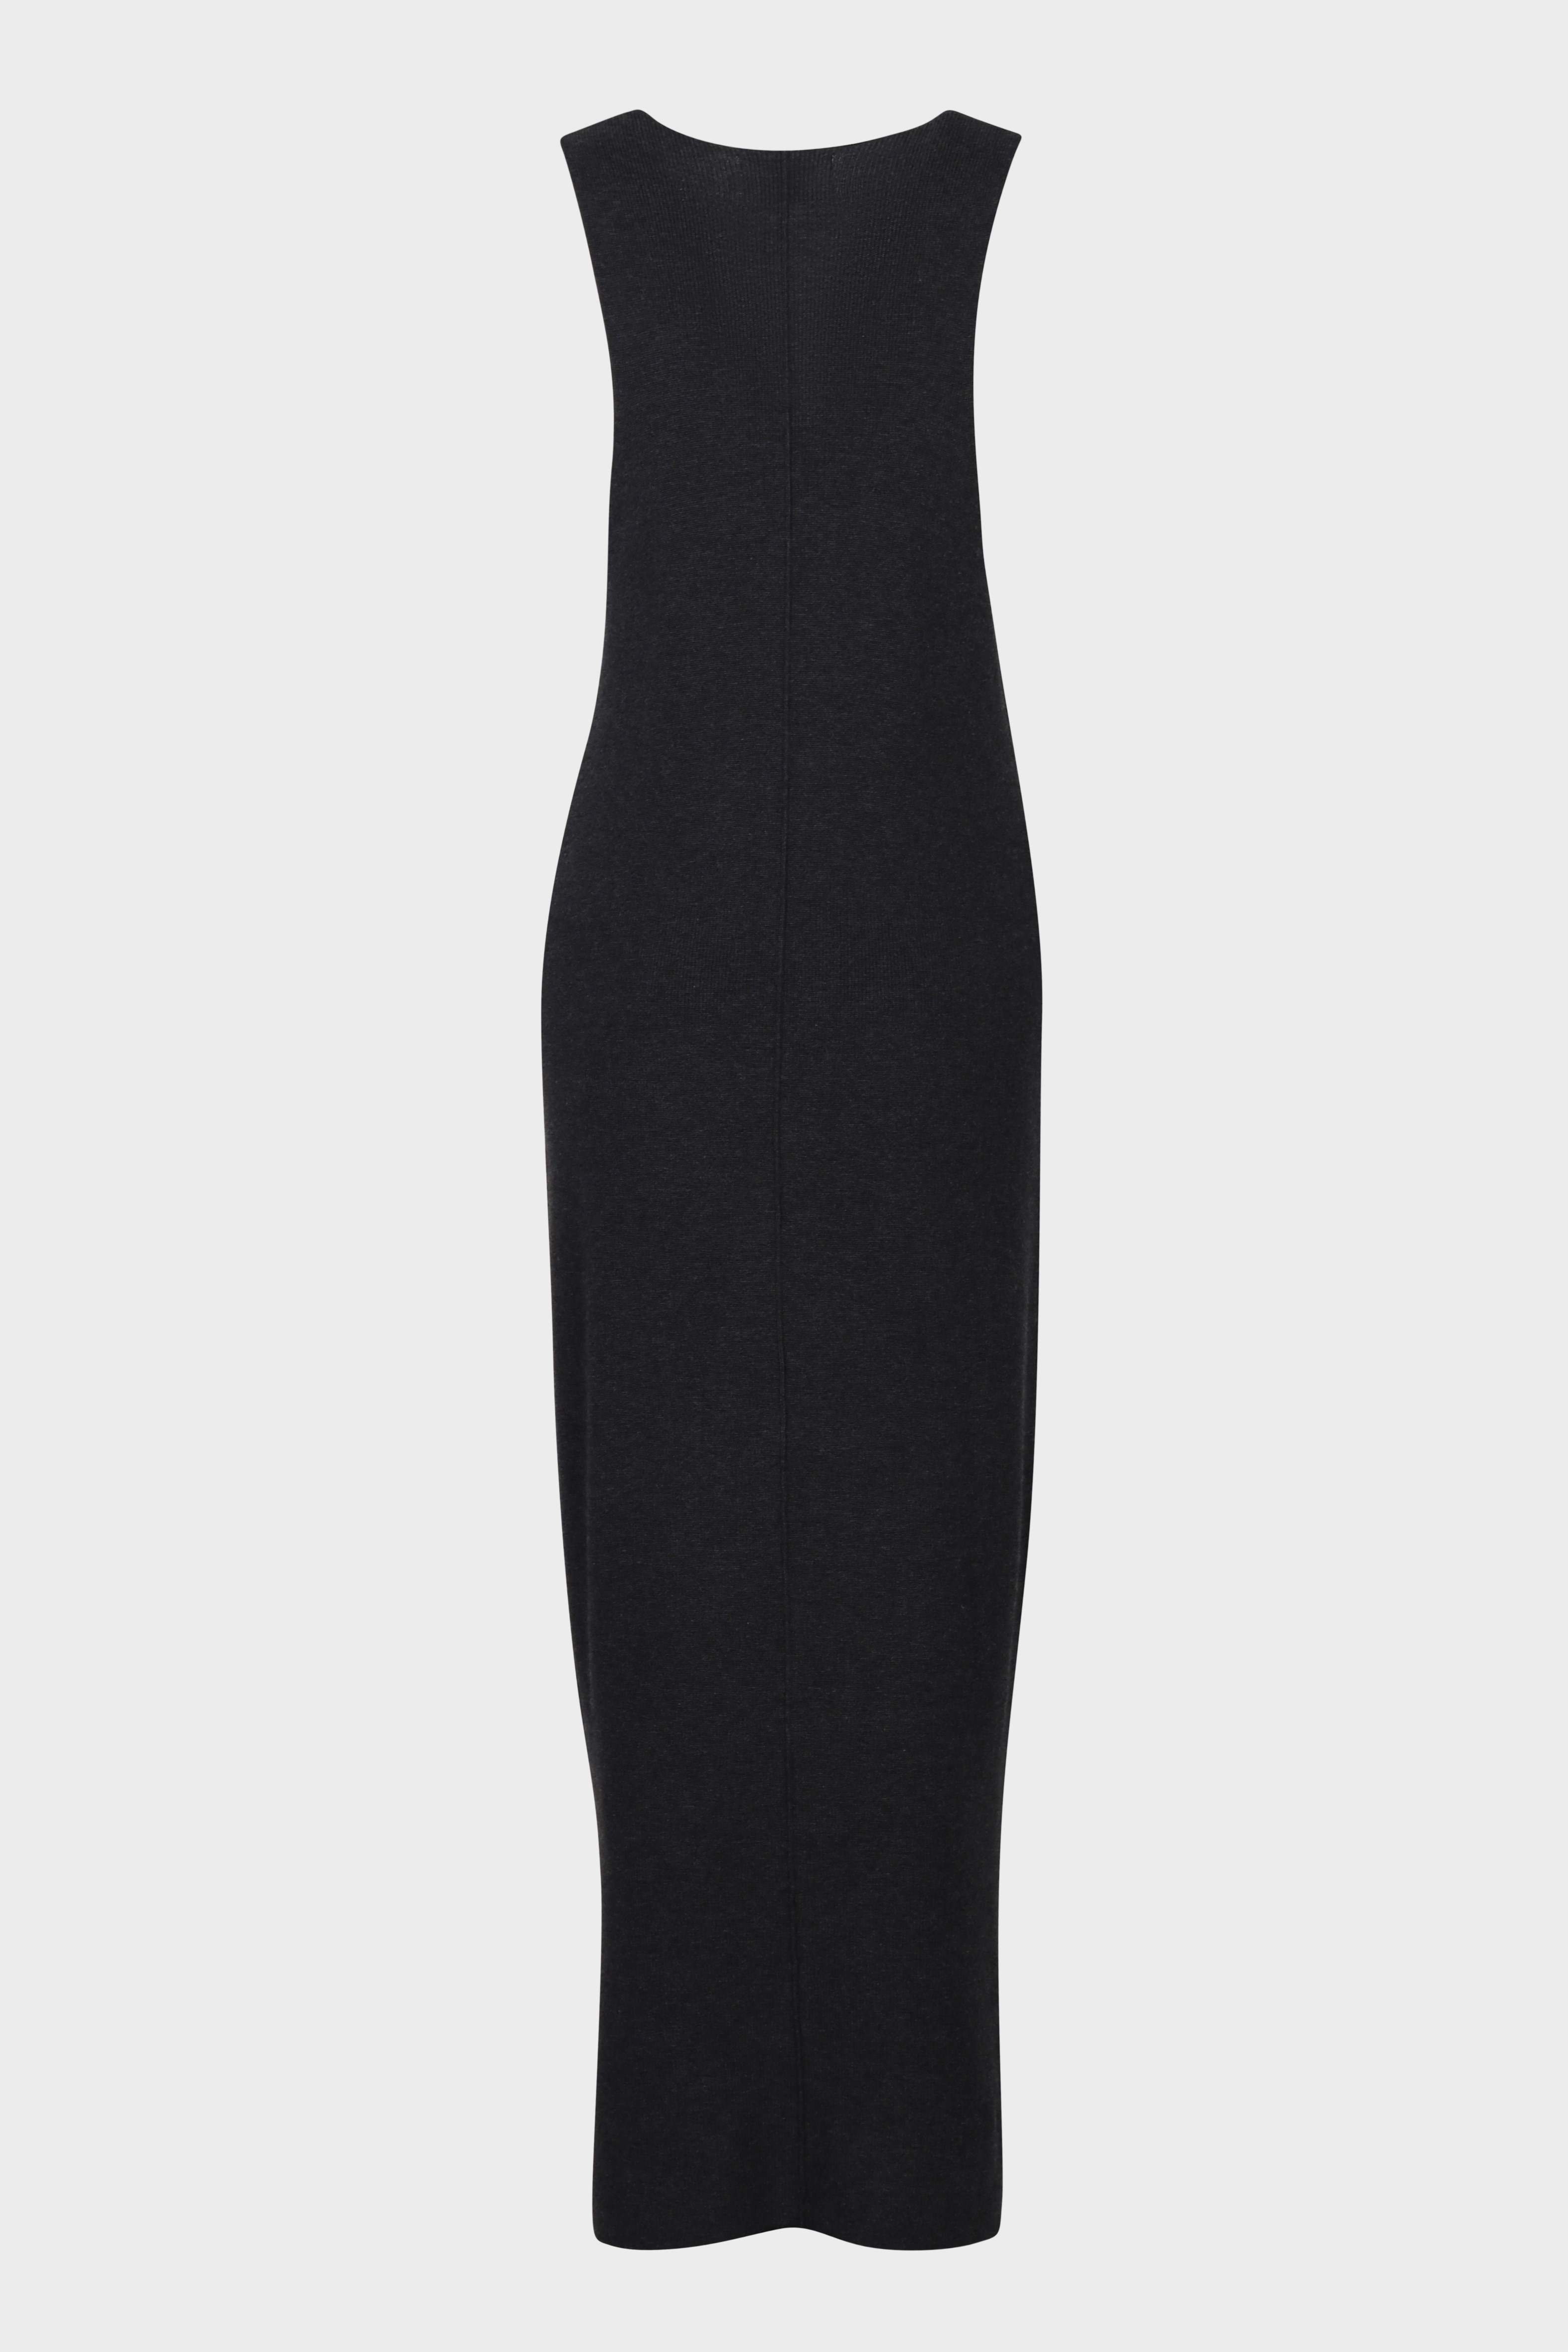 FLONA Cotton/ Cashmere Knit Dress in Dark Grey S